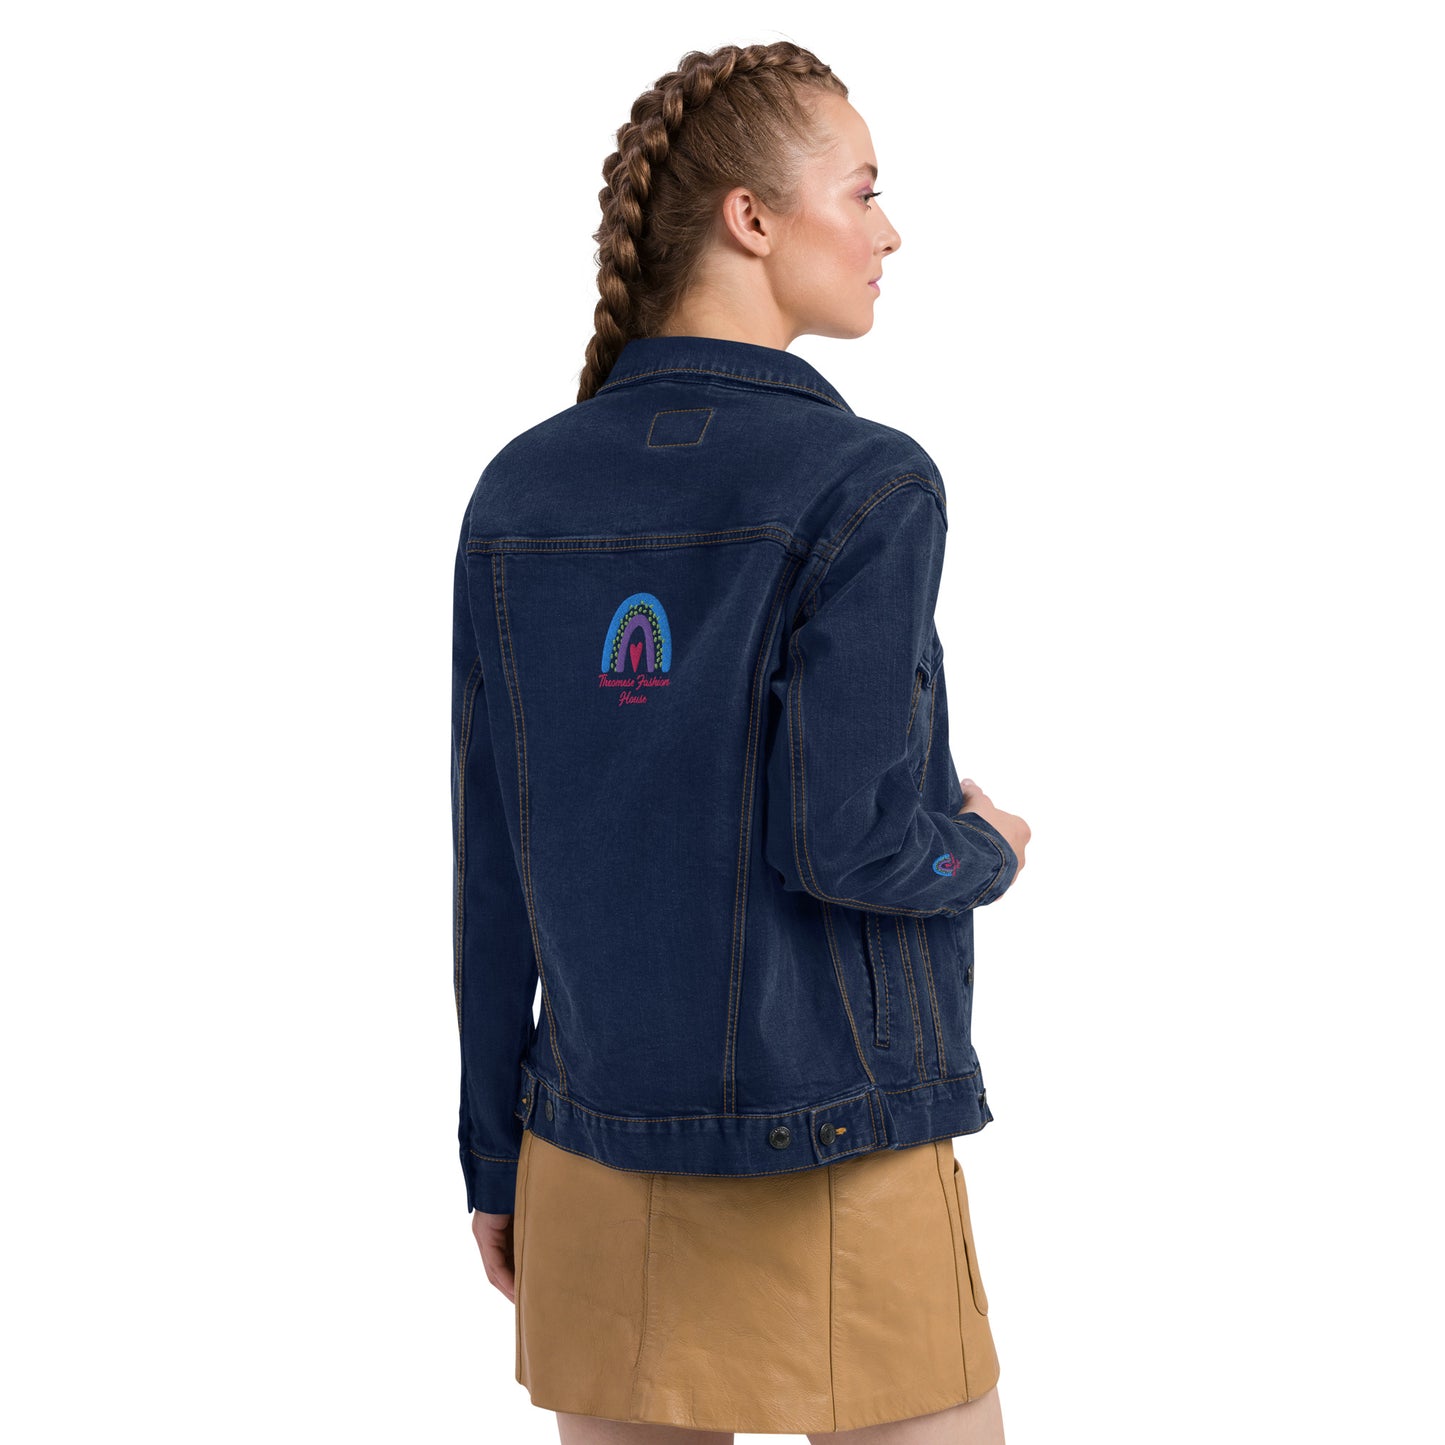 Signature-Unisex Denim Jacket with Cuff Design